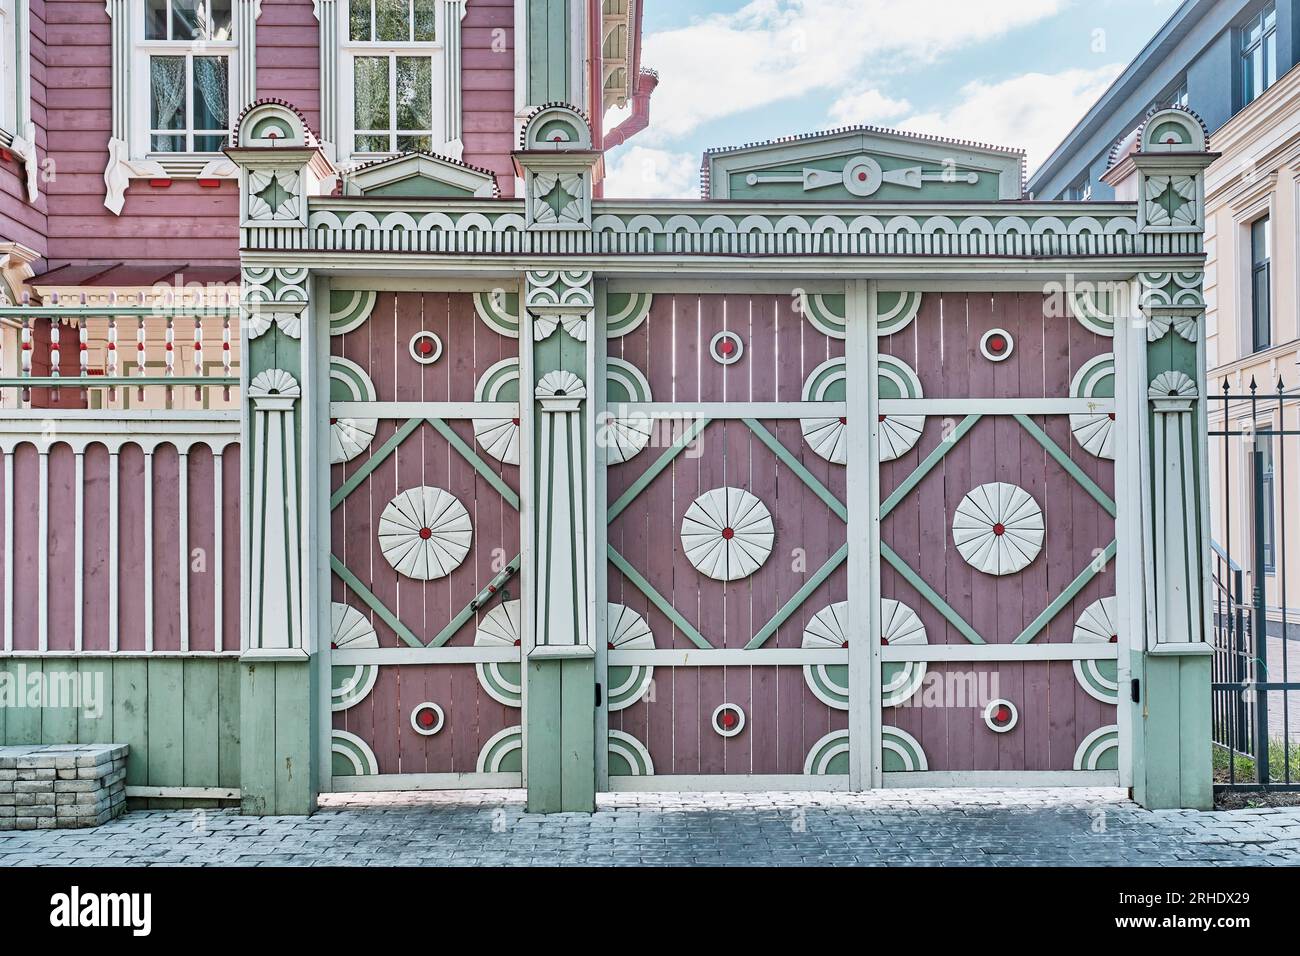 Portail en bois coloré avec motif végétal sculpté, ornement tatar traditionnel. Maison résidentielle recréée au début du 20e siècle. Vieille colonie tatare, Kazan Banque D'Images